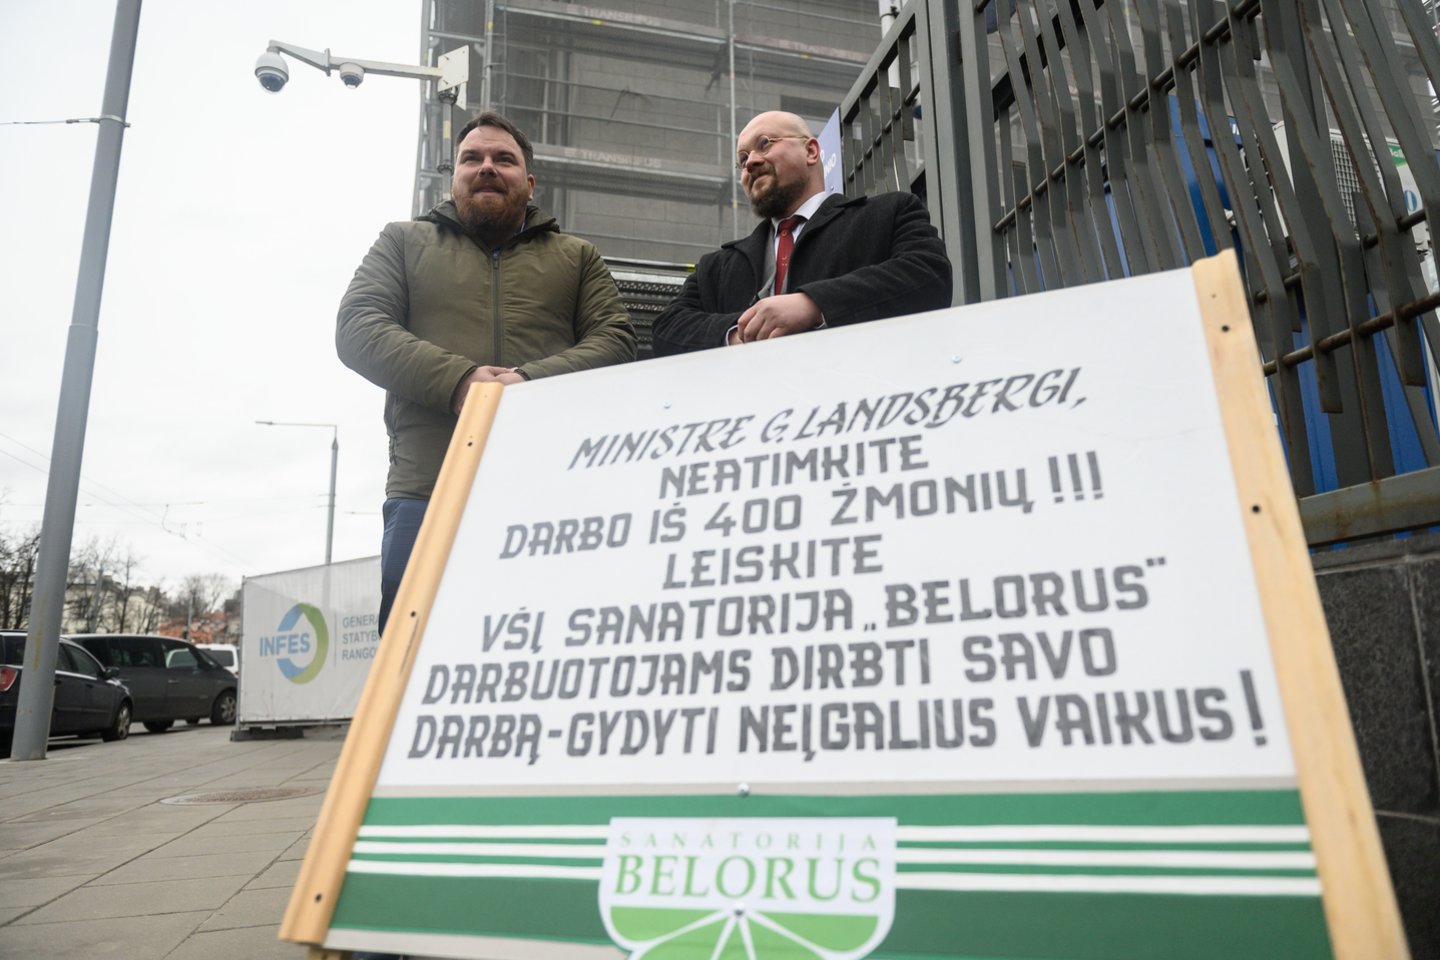 2020 metais sanatorijos „Belorus“ darbuotojai piketavo Vilniuje, kai dėl ES sankcijų neteko darbo ir atlyginimų.<br>V.Skaraičio nuotr.